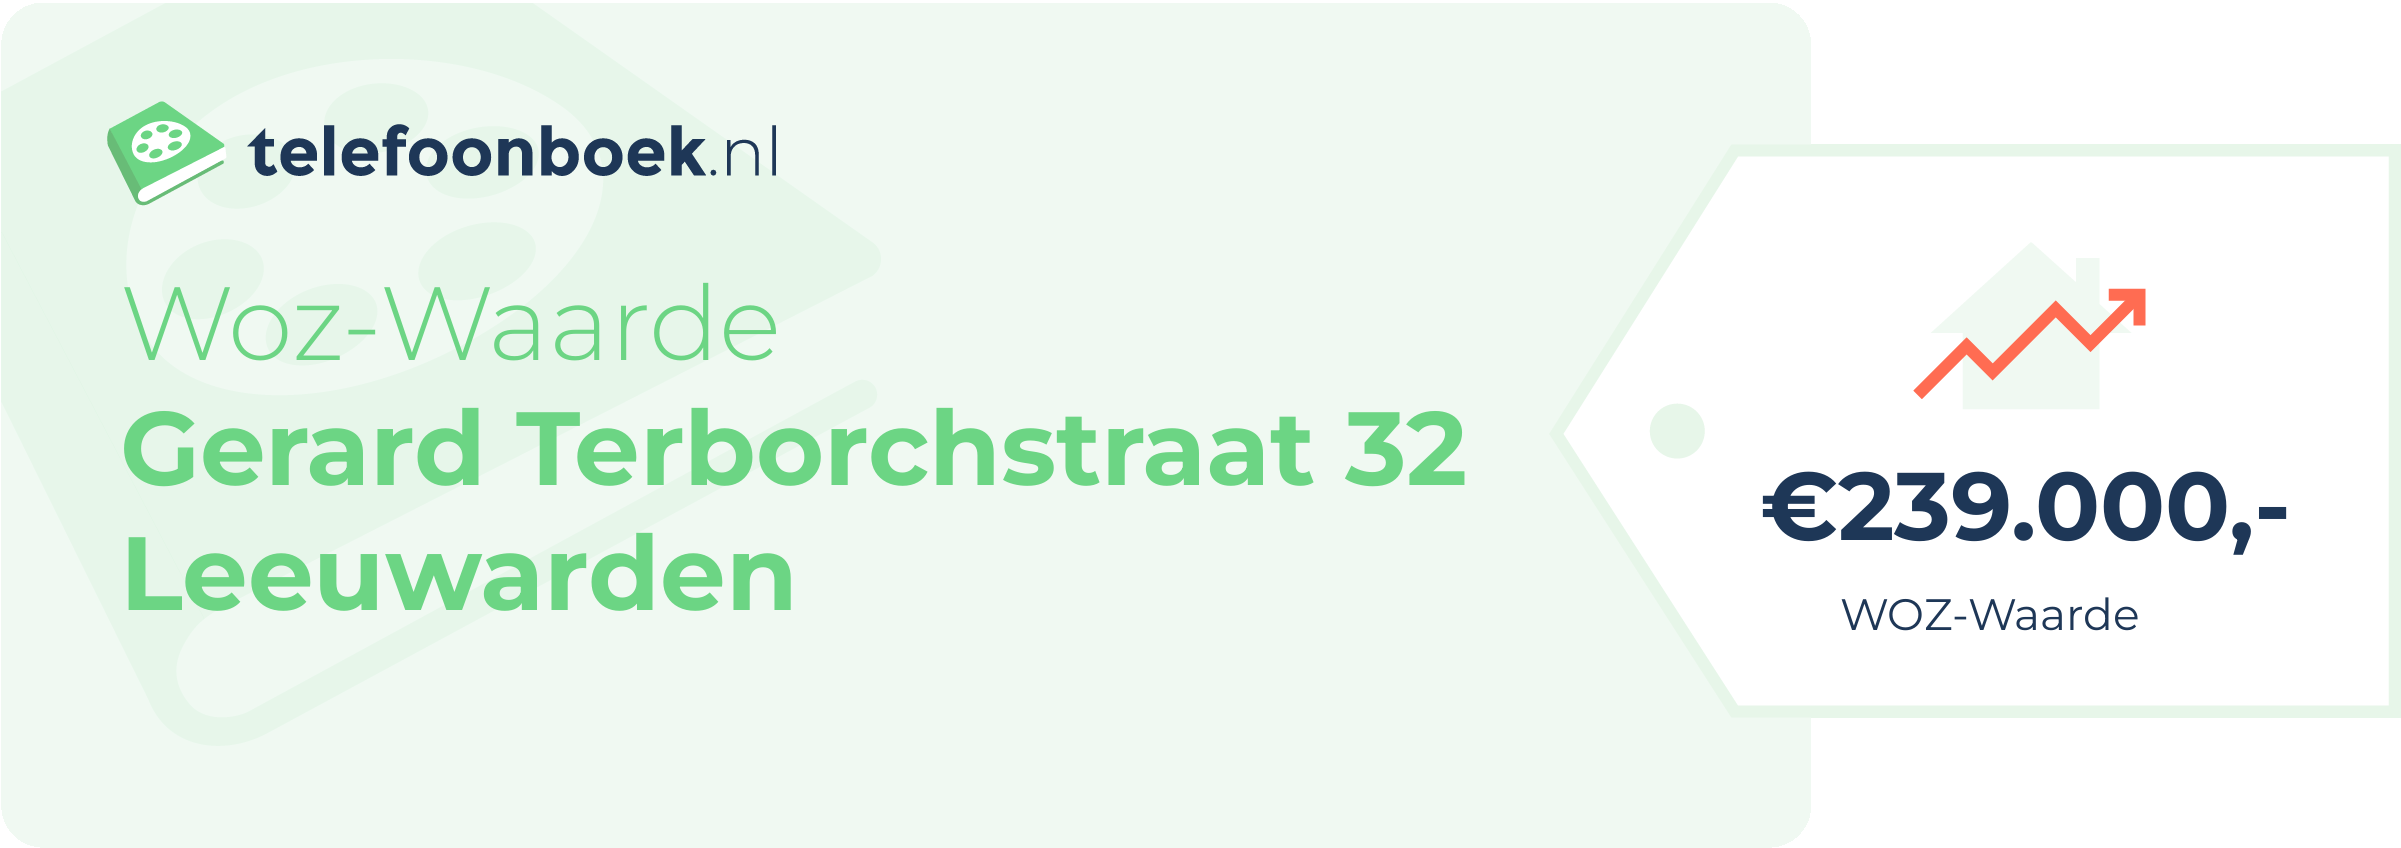 WOZ-waarde Gerard Terborchstraat 32 Leeuwarden